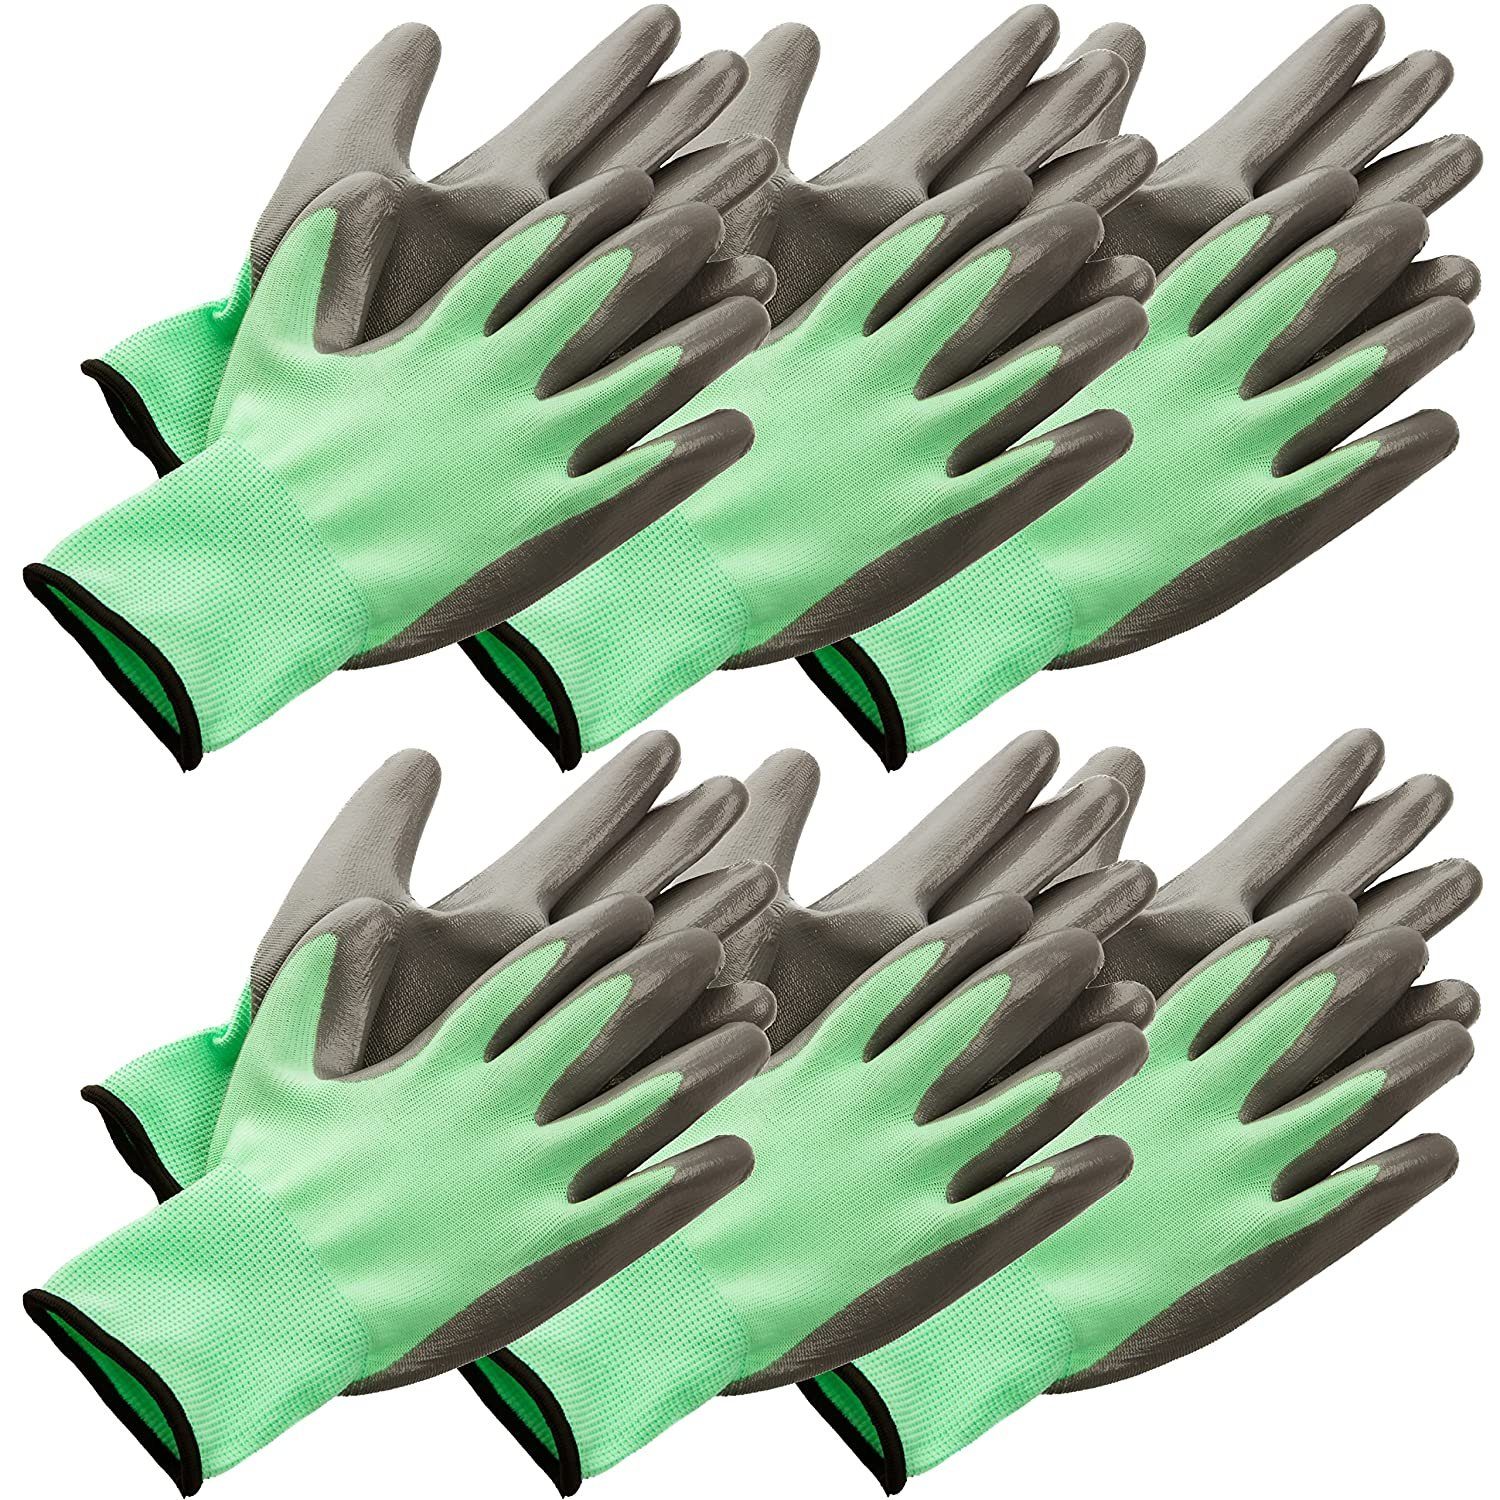 Centi Gartenhandschuhe 6 Arbeitshandschuhe Damen/Herren, Arbeitshandschuhe Gartenhandschuhe (Set, Größe 10, Grün) Montagehandschuhe Handschuhe Schutzhandschuhe